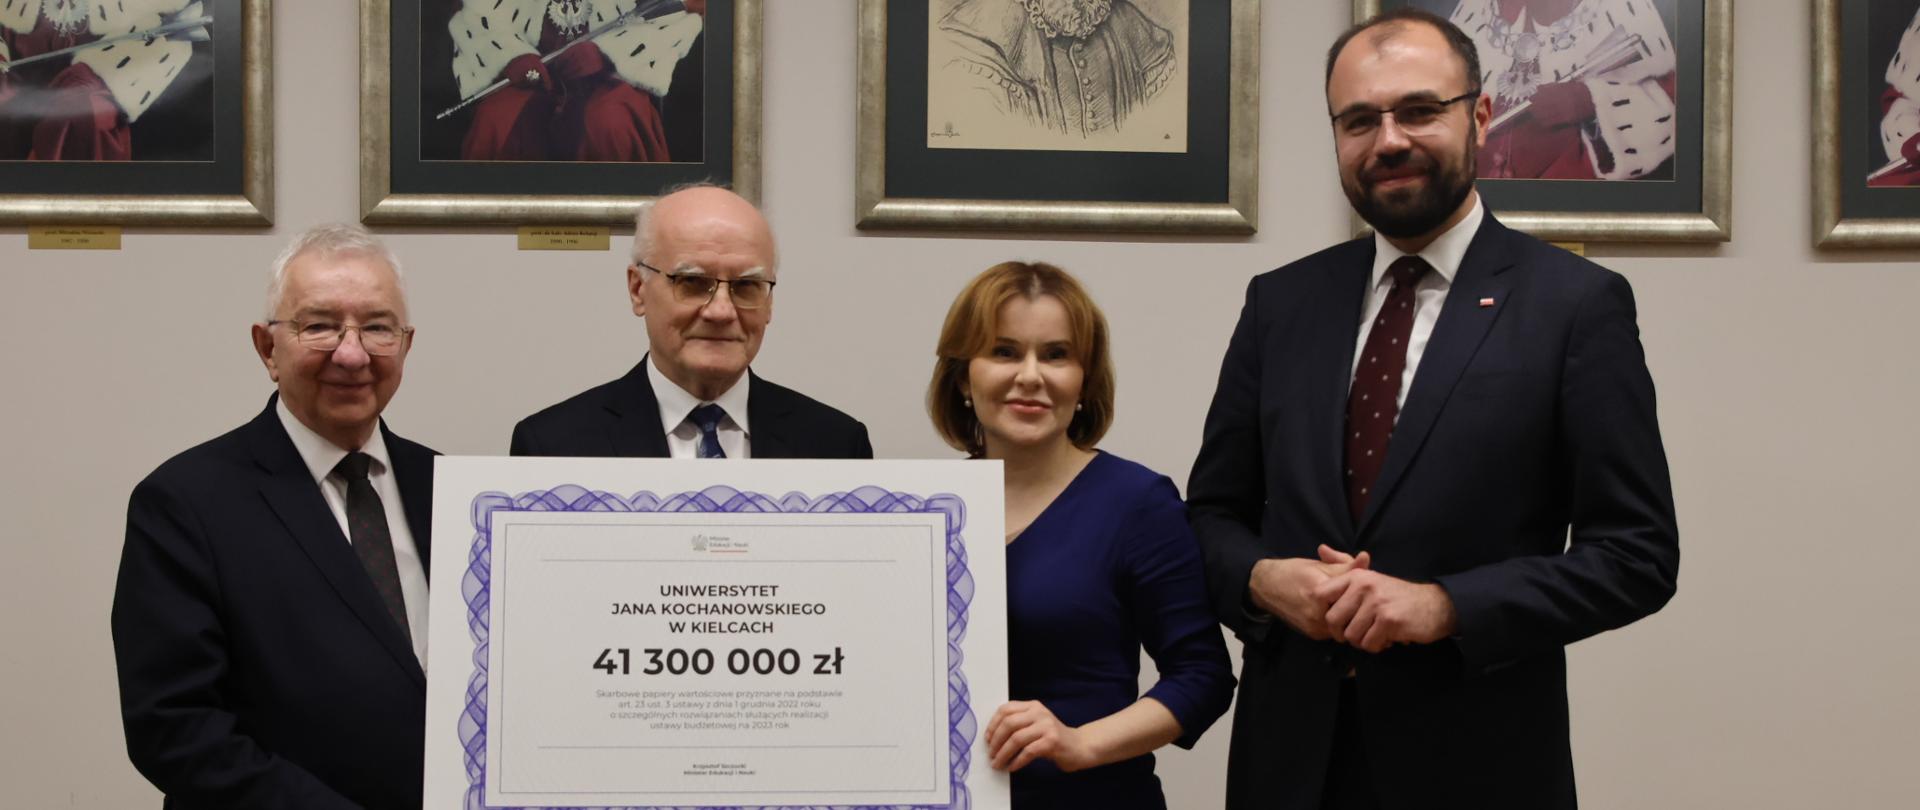 Dwaj mężczyźni w garniturach i kobieta trzymają wydrukowany czek z kwotą 41300000 zł. Obok stoi minister Szczucki. W tle na ścianie wiszą portrety rektorów. 